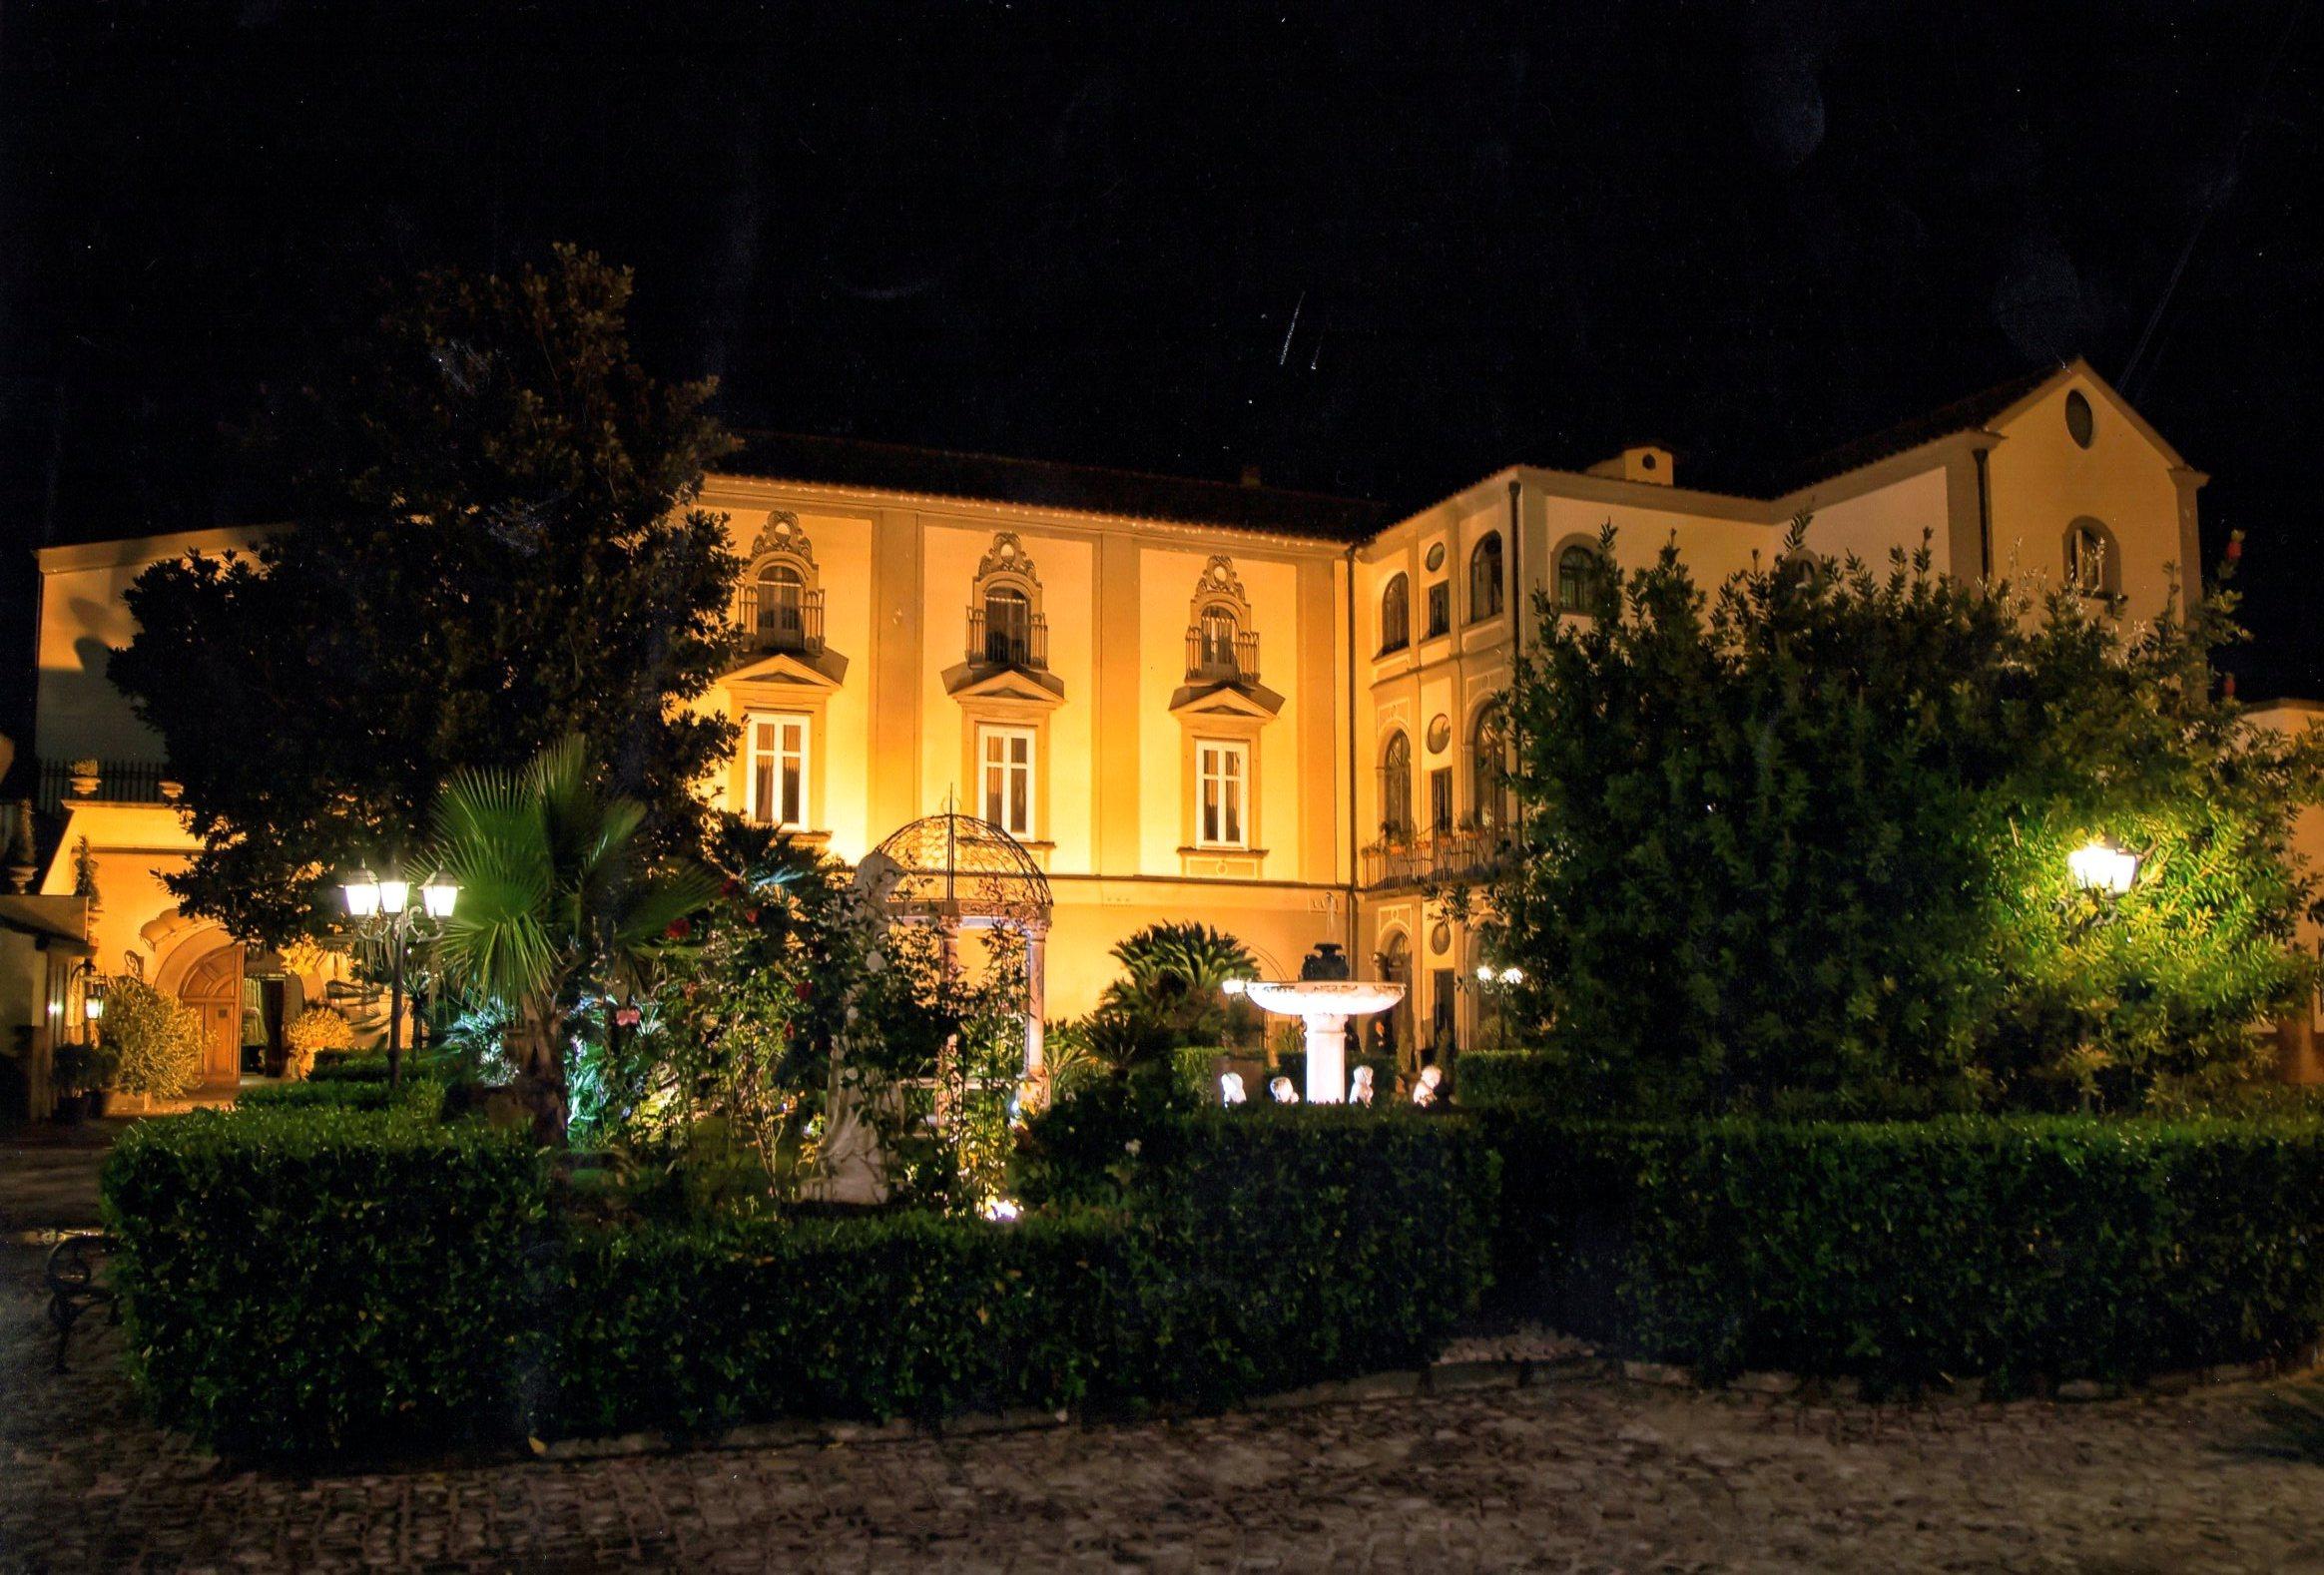 Palazzo Marchesale, la villa dei grandi eventi